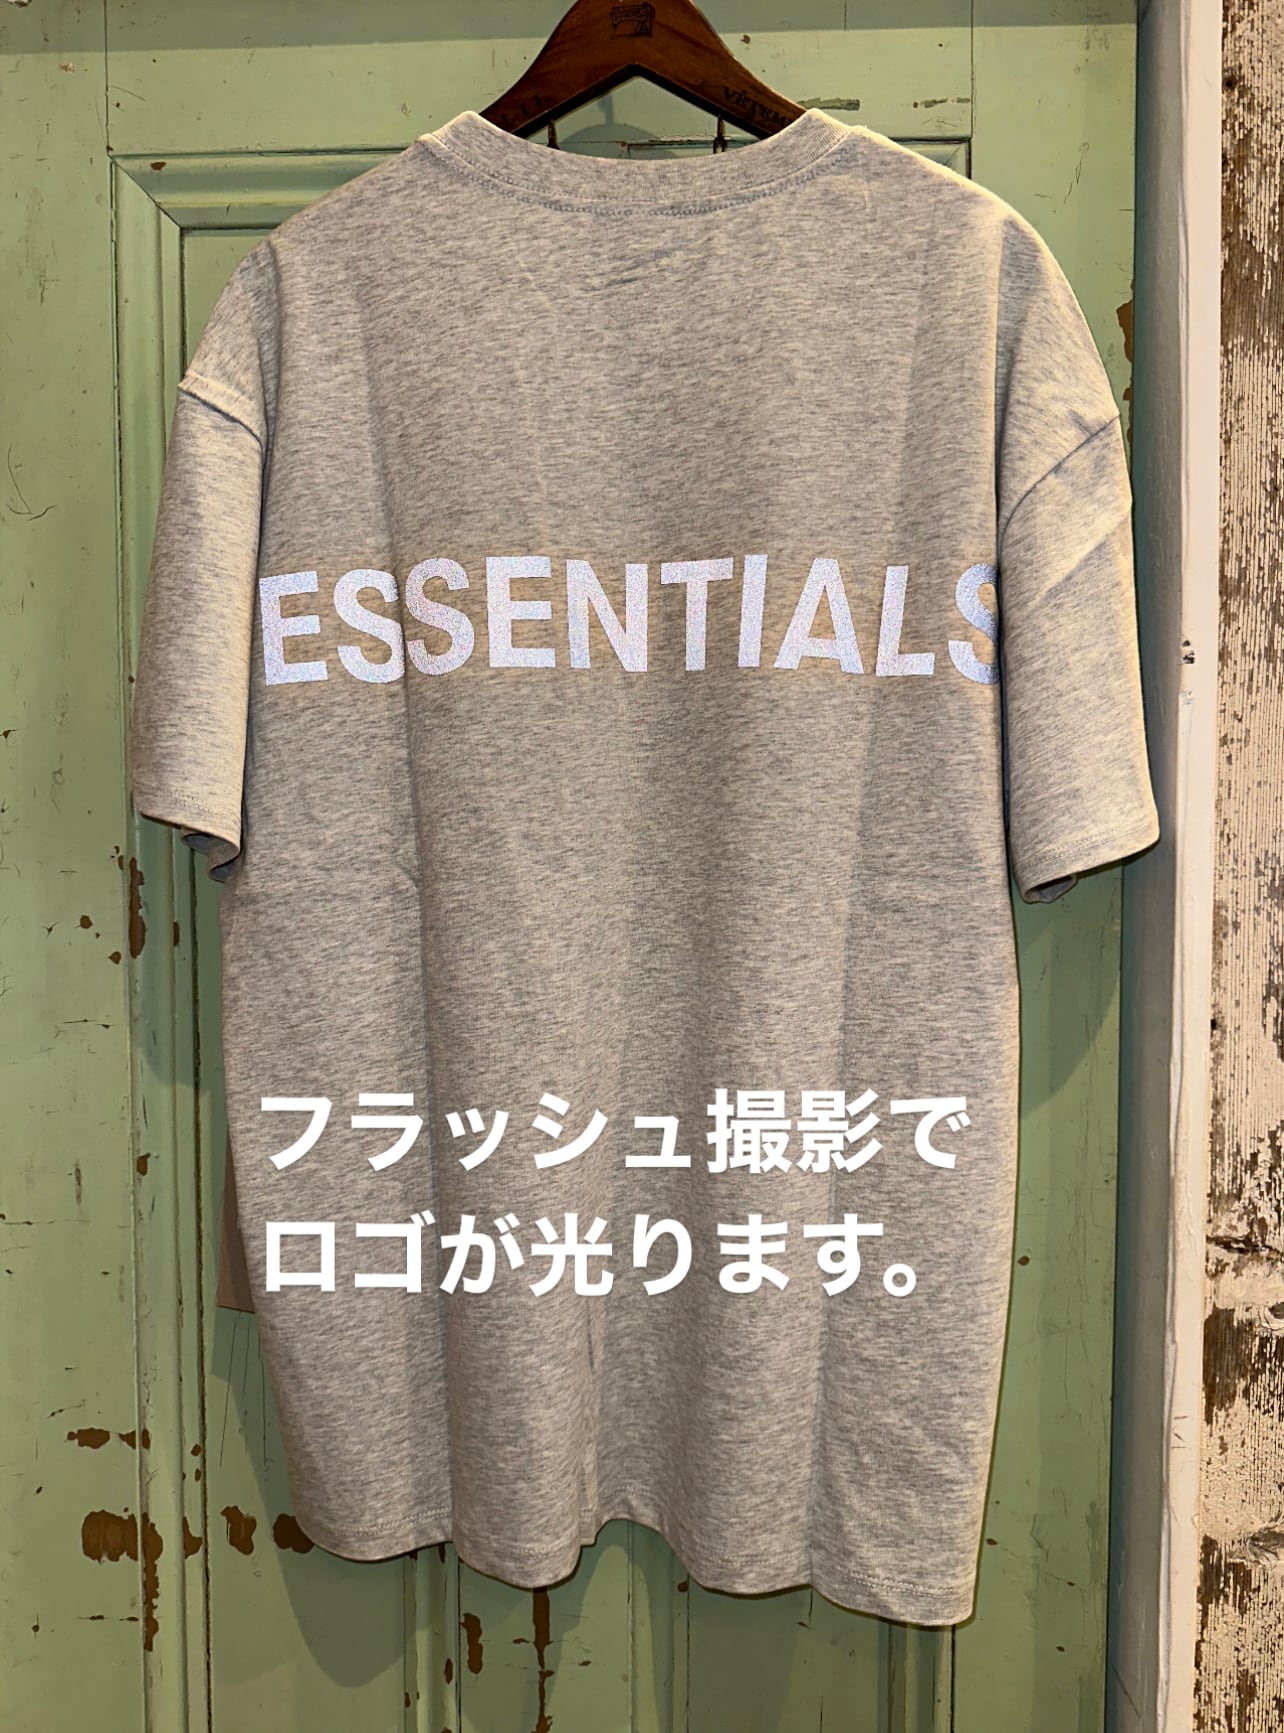 メンズFOG  essentials エッセンシャルズ  半袖tシャツ